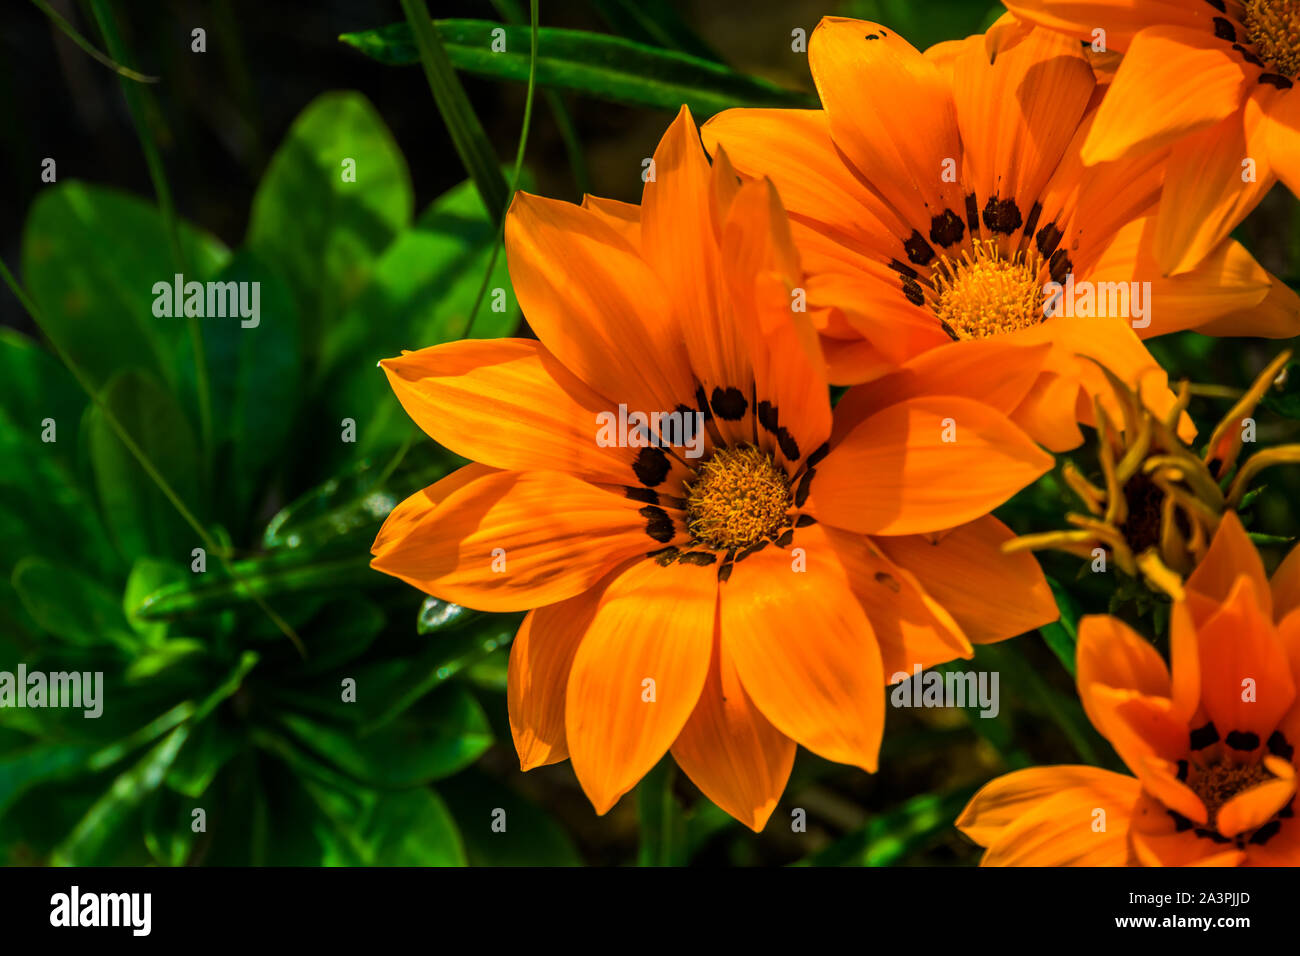 Orange Schatz Blumen in Nahaufnahme, tropische Pflanze specie aus Afrika,  Natur Hintergrund, beliebte Zierpflanzen garten Blume Stockfotografie -  Alamy